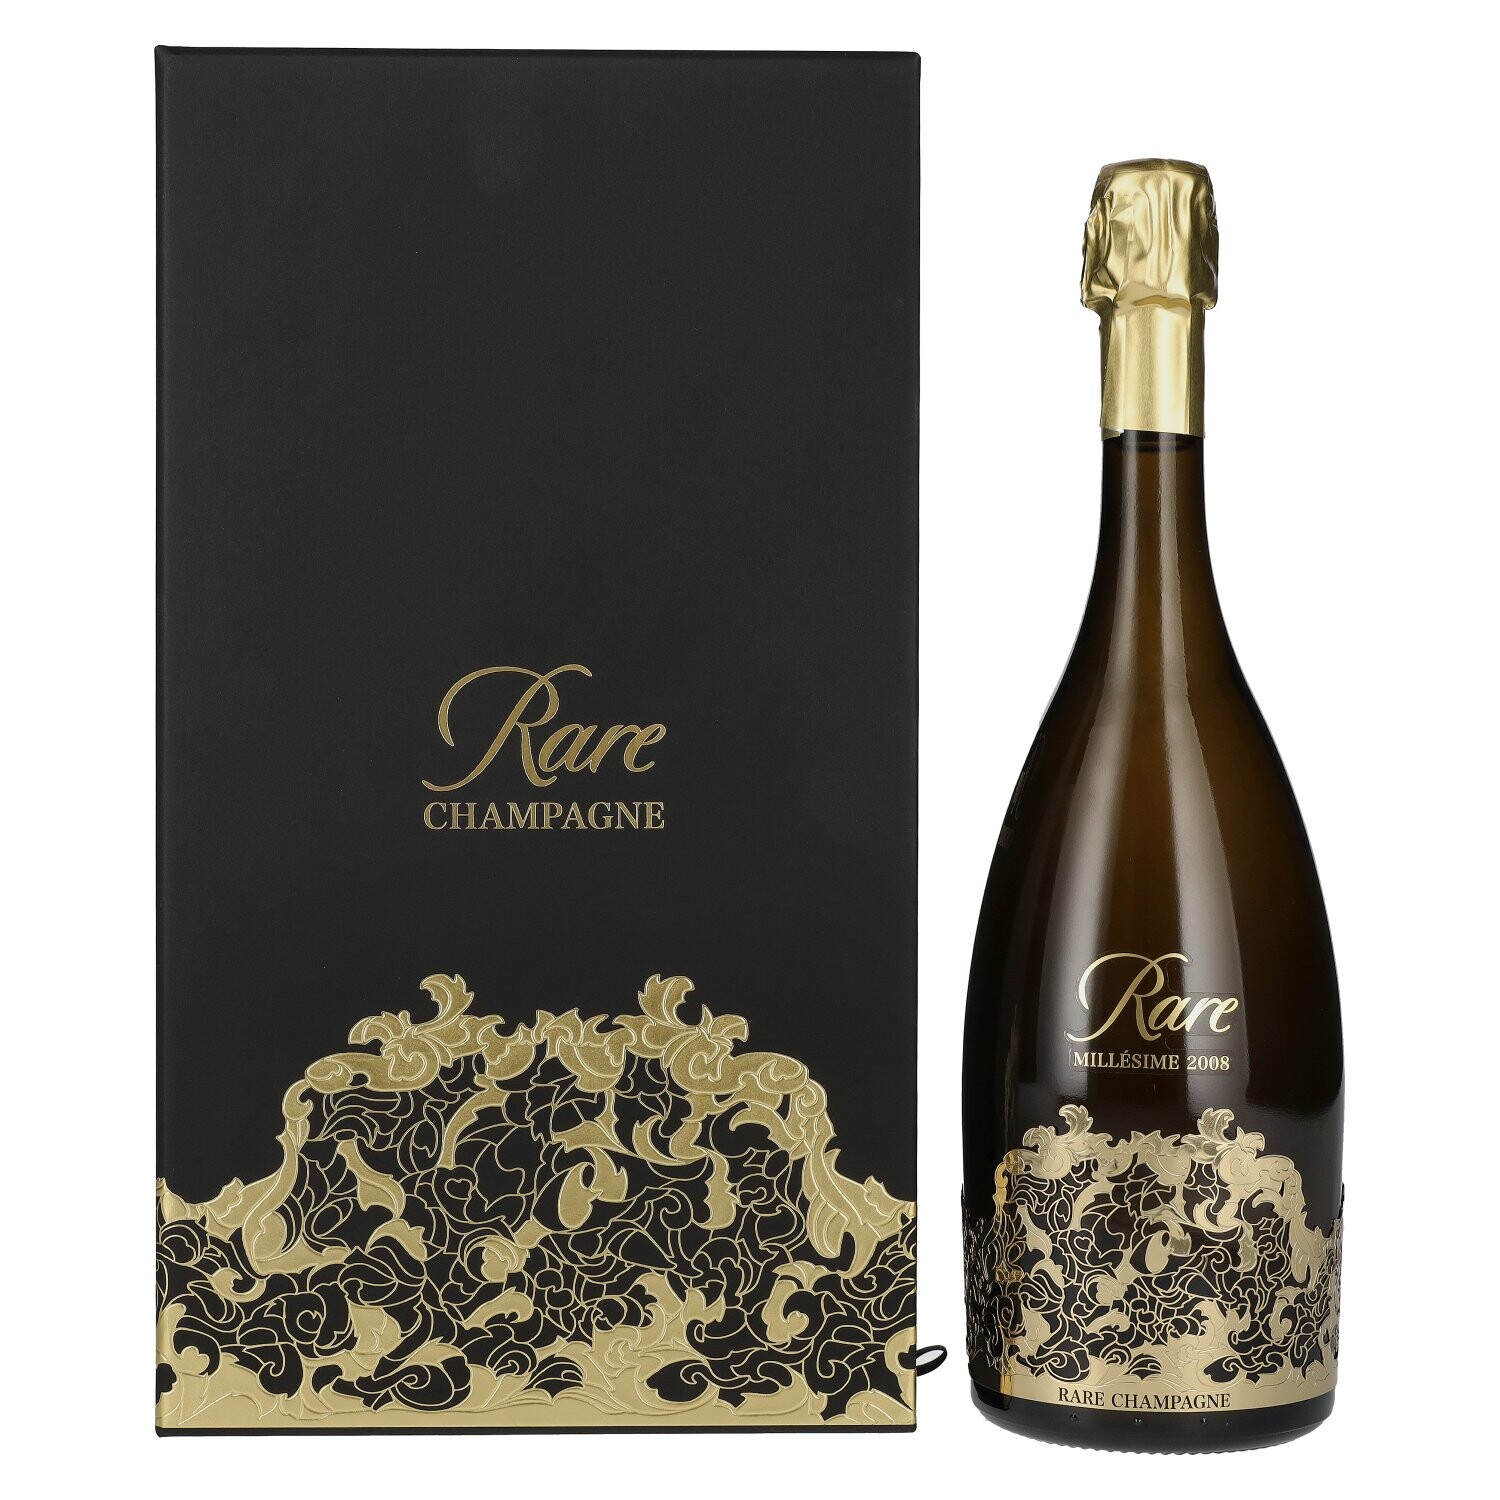 Rare Millésime Champagne 2008 12% Vol. 0,75l in Giftbox